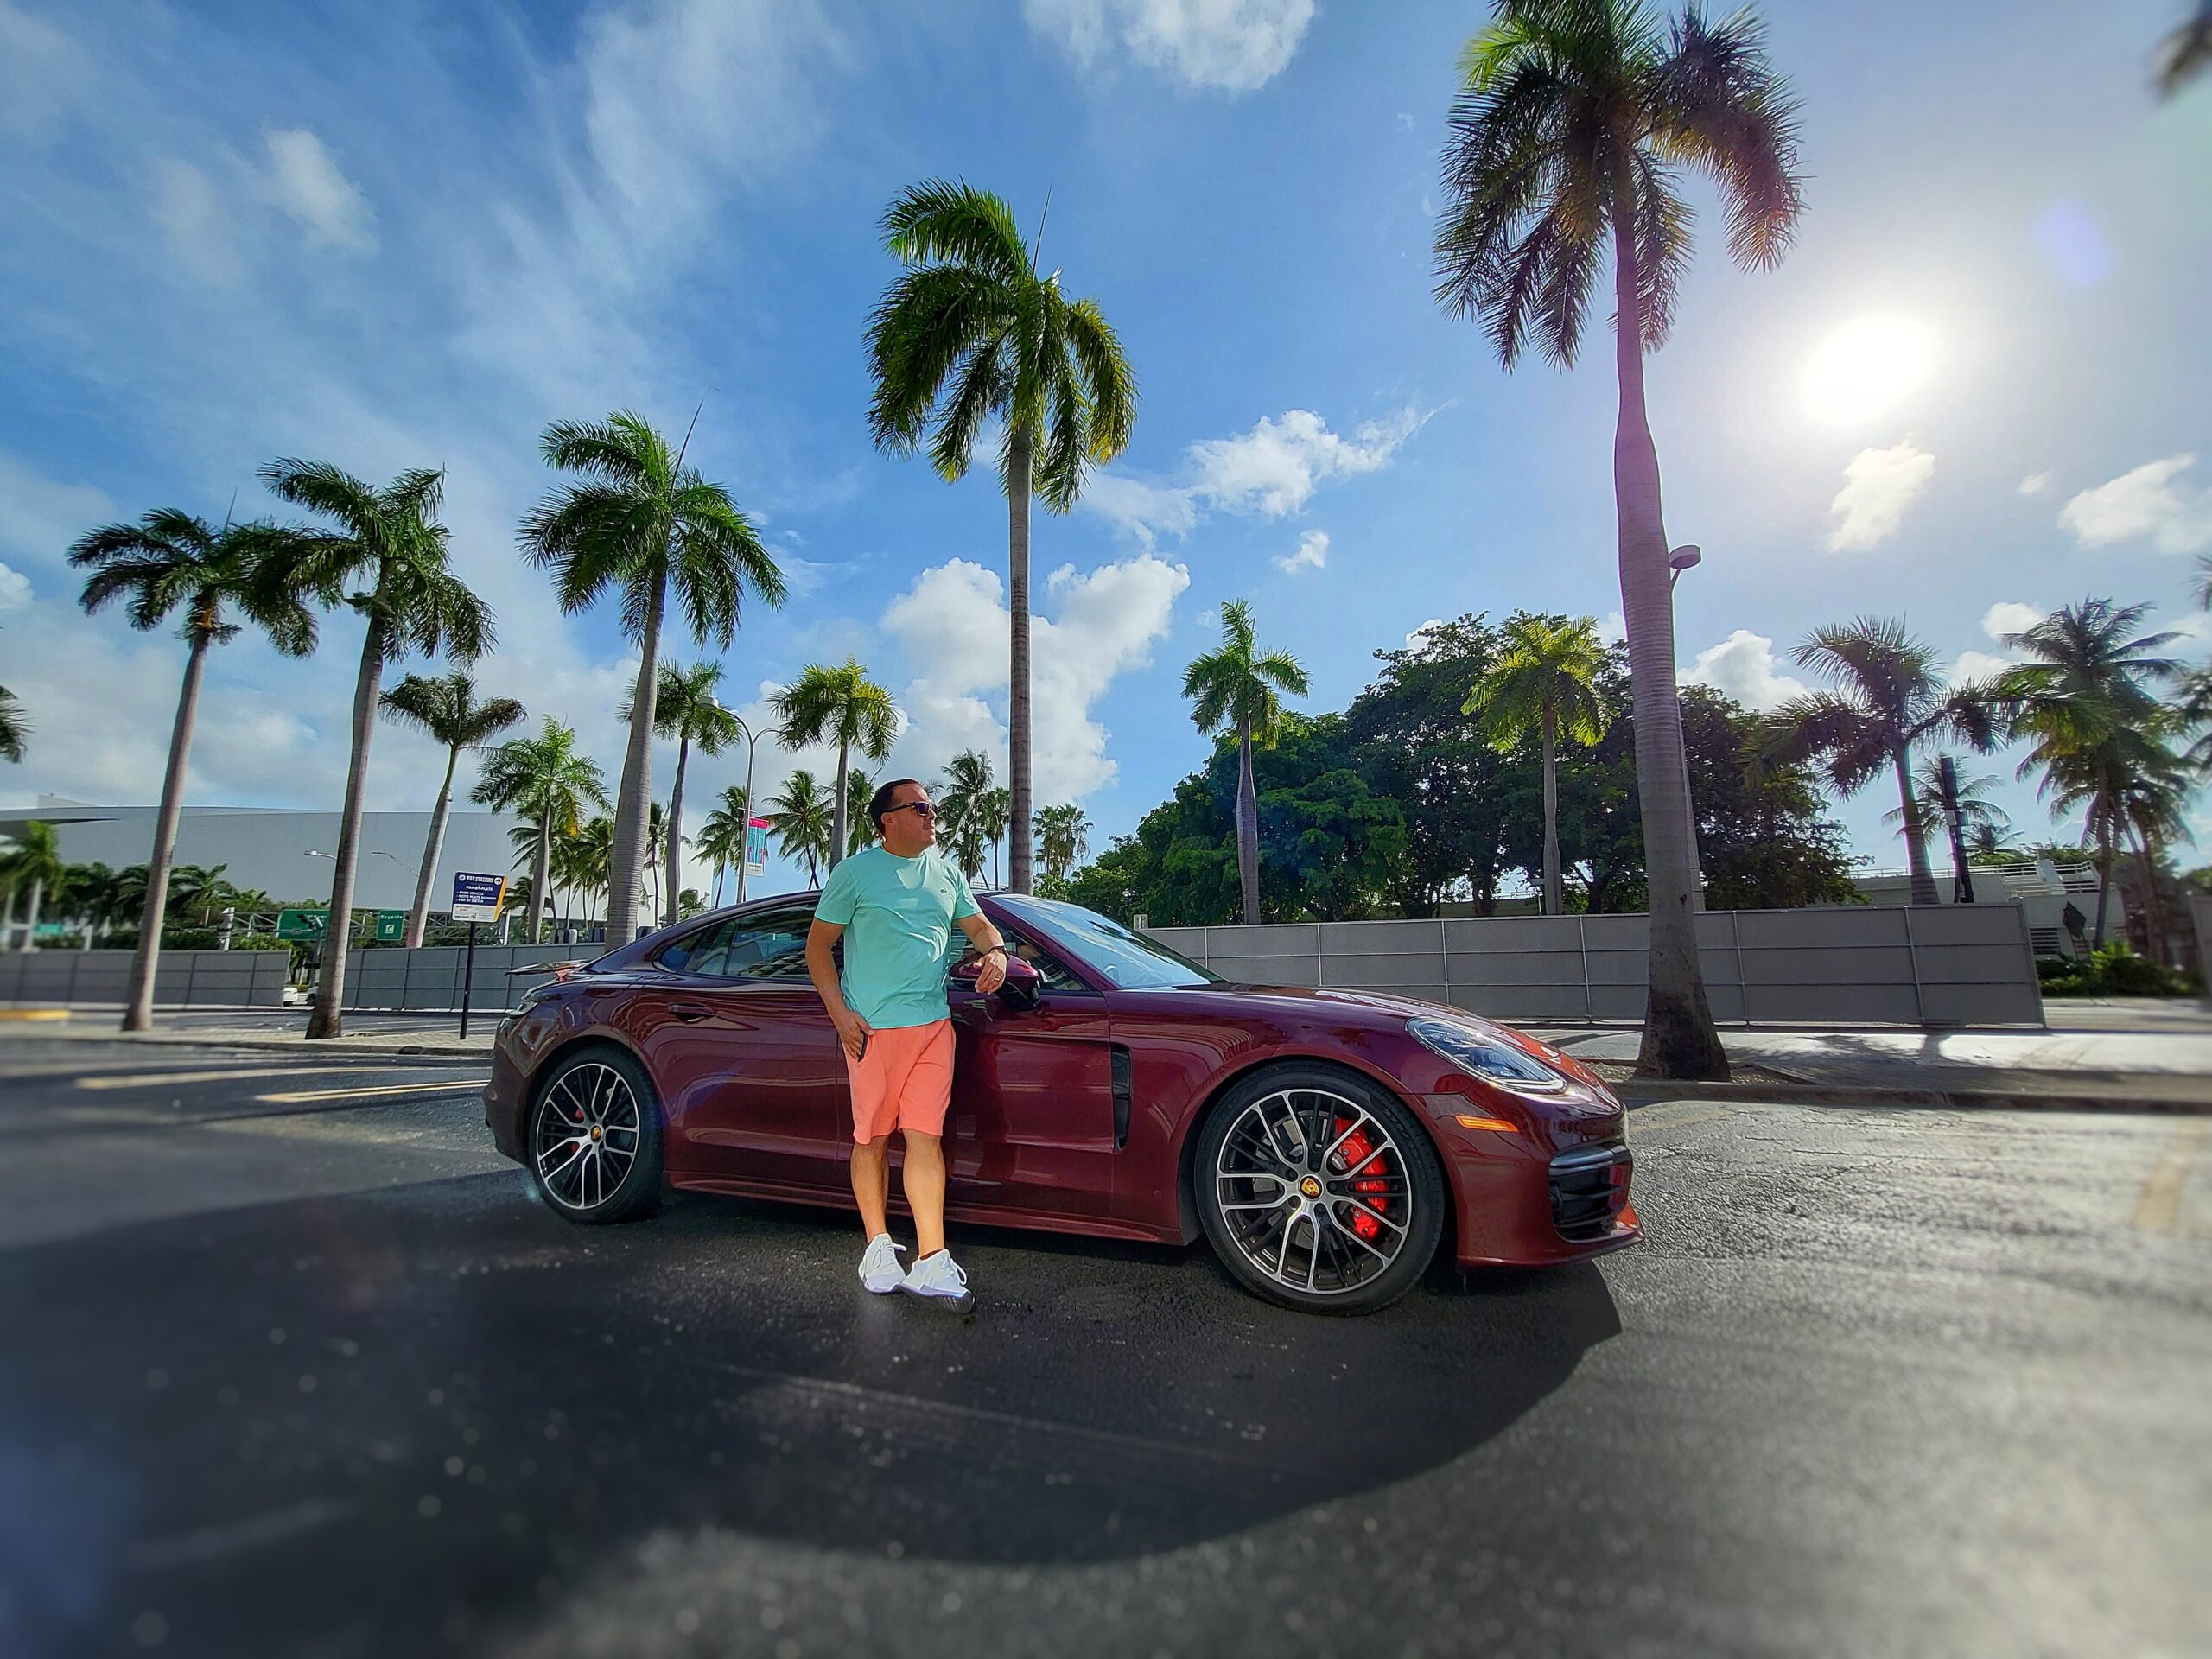 Experiencia de lujo en el Porsche Miami Lifestyle